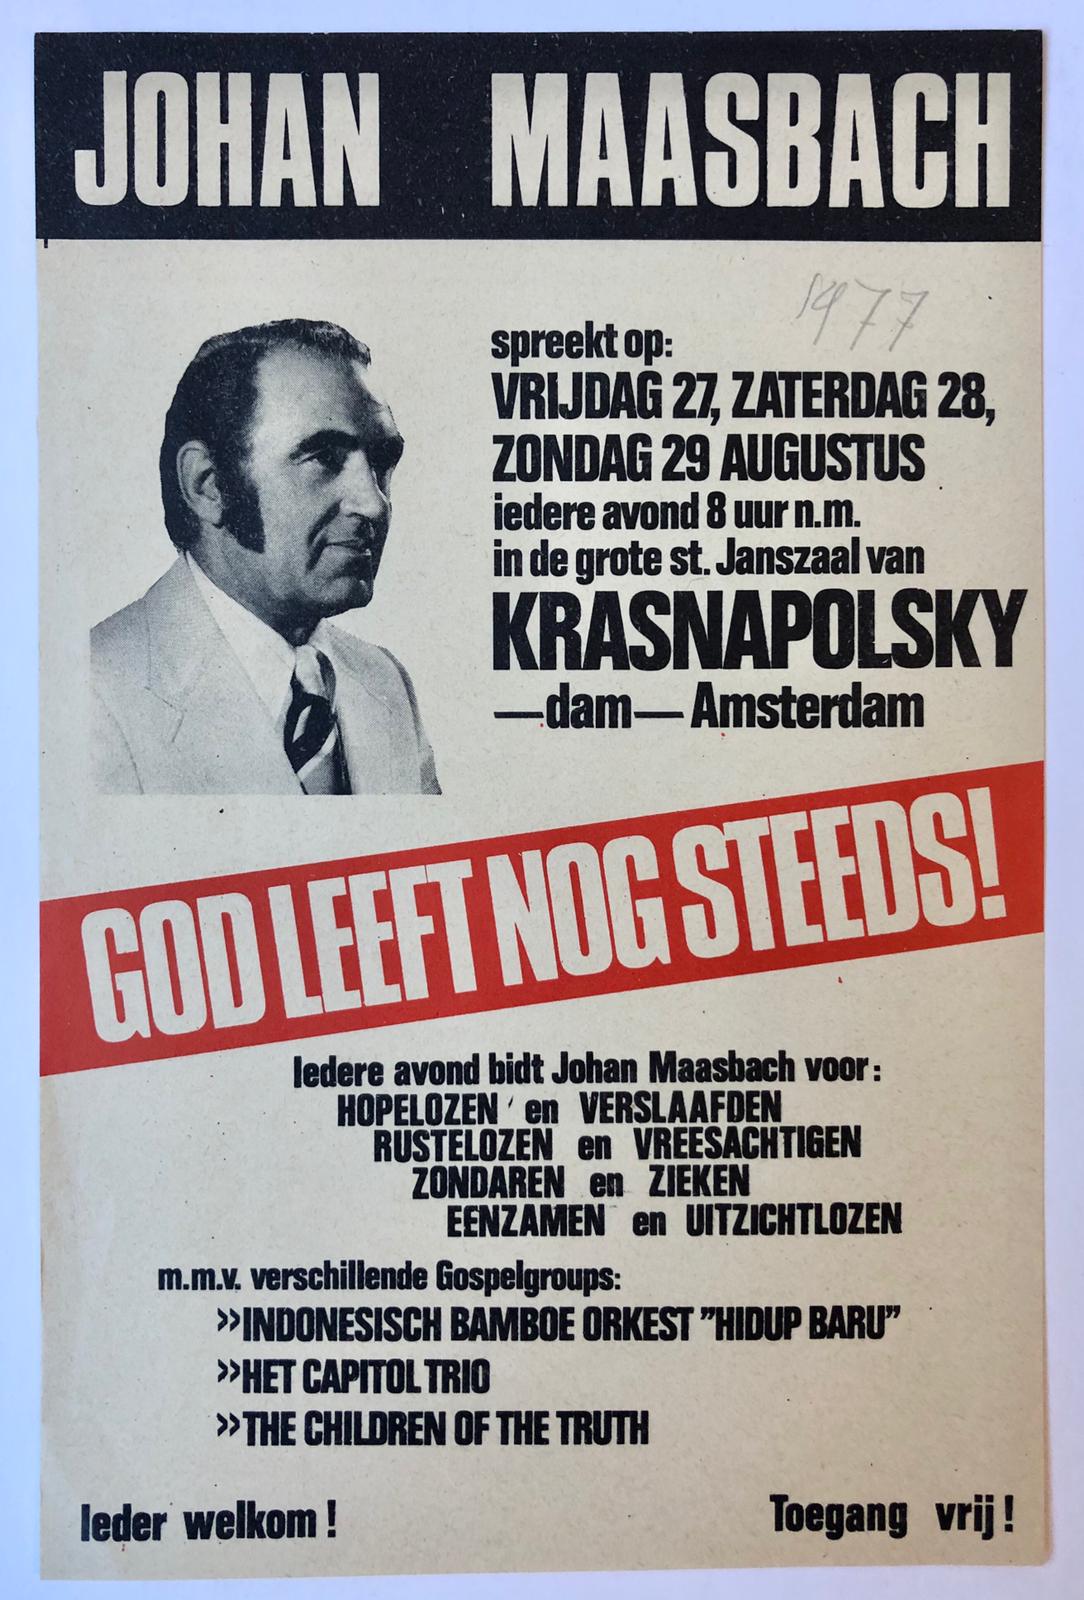 [Flyer 1977] MAASBACH Gedrukt strooibiljet `God leeft nog steeds!' van Johan Maasbach, 1977.